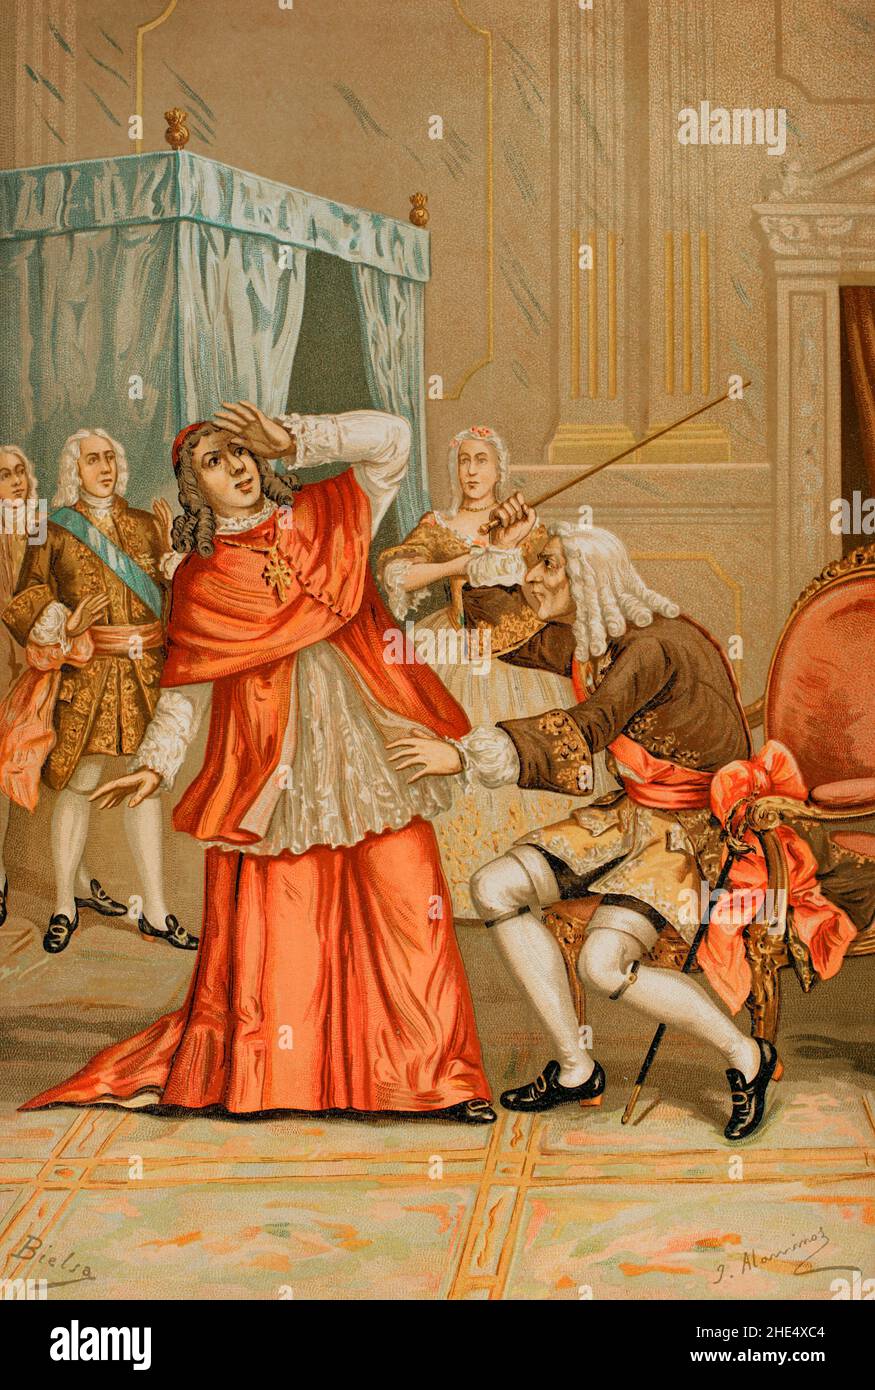 Giulio Alberoni (1664-1752). Italienischer Diplomat, Staatsmann und Kardinal der katholischen Kirche. Im April 1713 zum offiziellen Vertreter des Herzogs von Parma ernannt. Er war der Hauptberater von König Philipp V. von Spanien. Streit zwischen Kardinal Alberoni und dem Bürgermeister von Mayordomo, Herzog von Escalona, während der Krankheit von Philip V. Niemand durfte die königliche Kammer betreten, außer die von der Königin und Alberoni autorisierten. Alberoni bat den Herzog von Escalona, den Raum nicht zu betreten, über den dieser empört wurde. Die Königin sah die Szene, als sie beim König saß Stockfoto